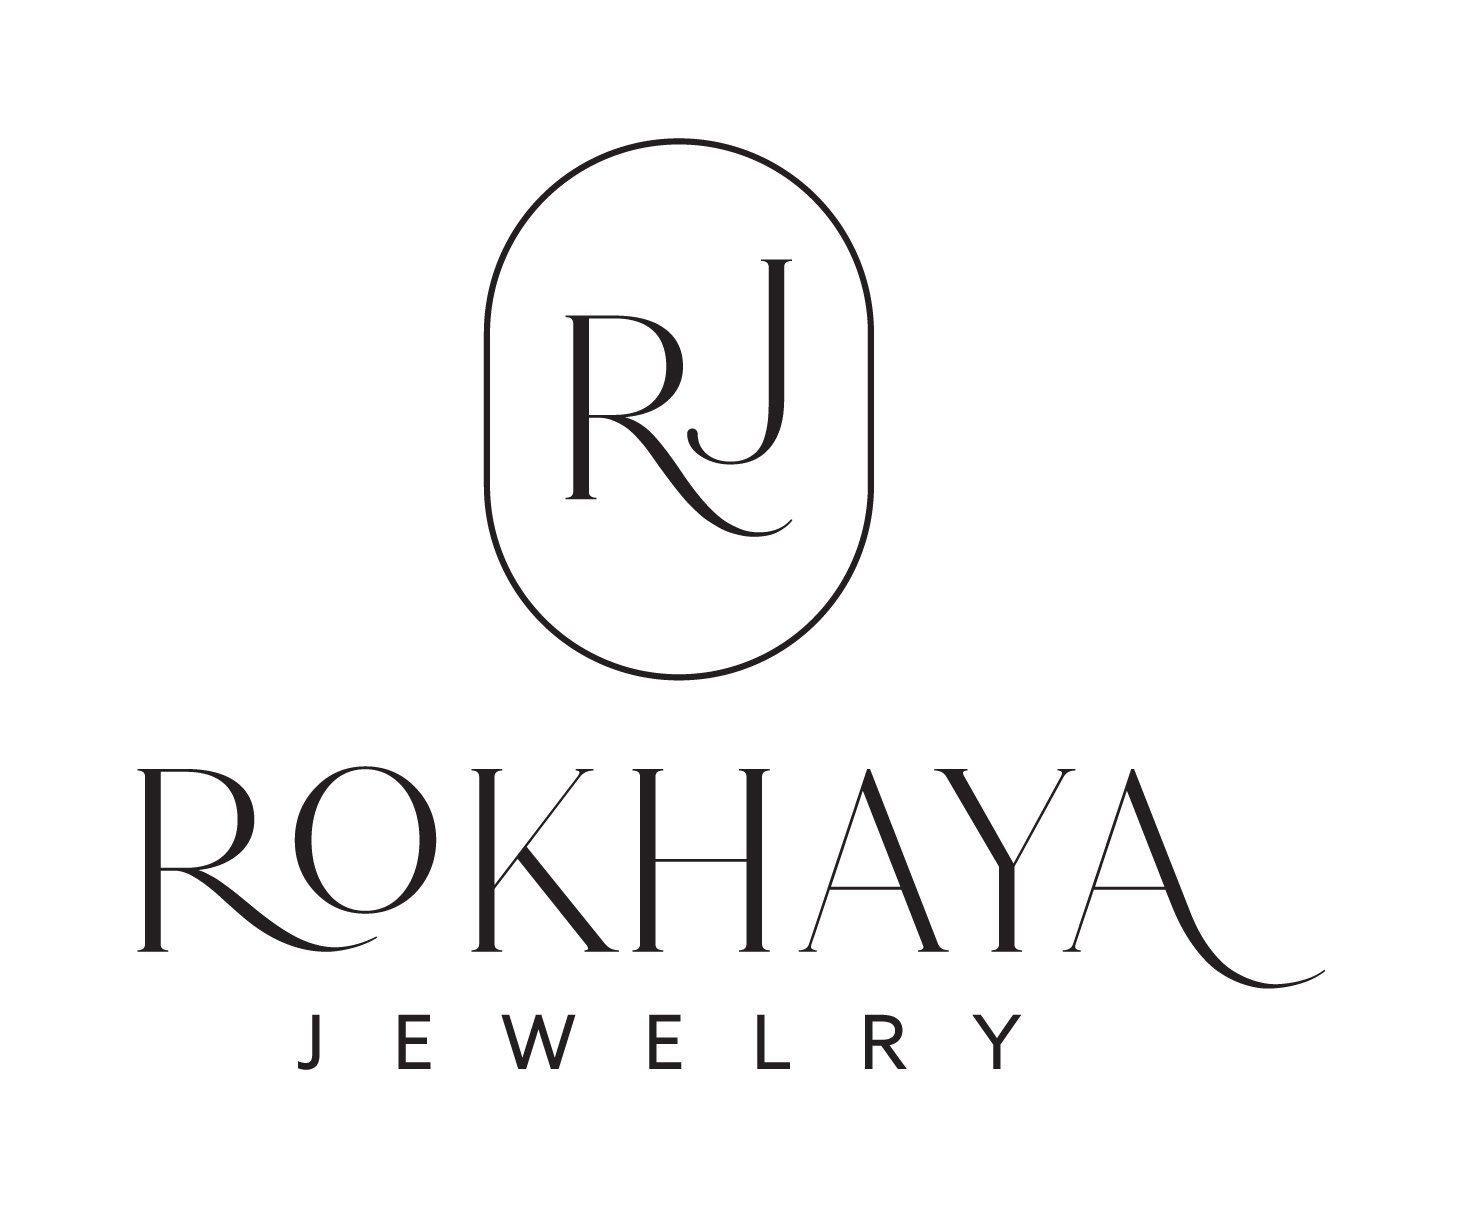 Rokhaya jewelry